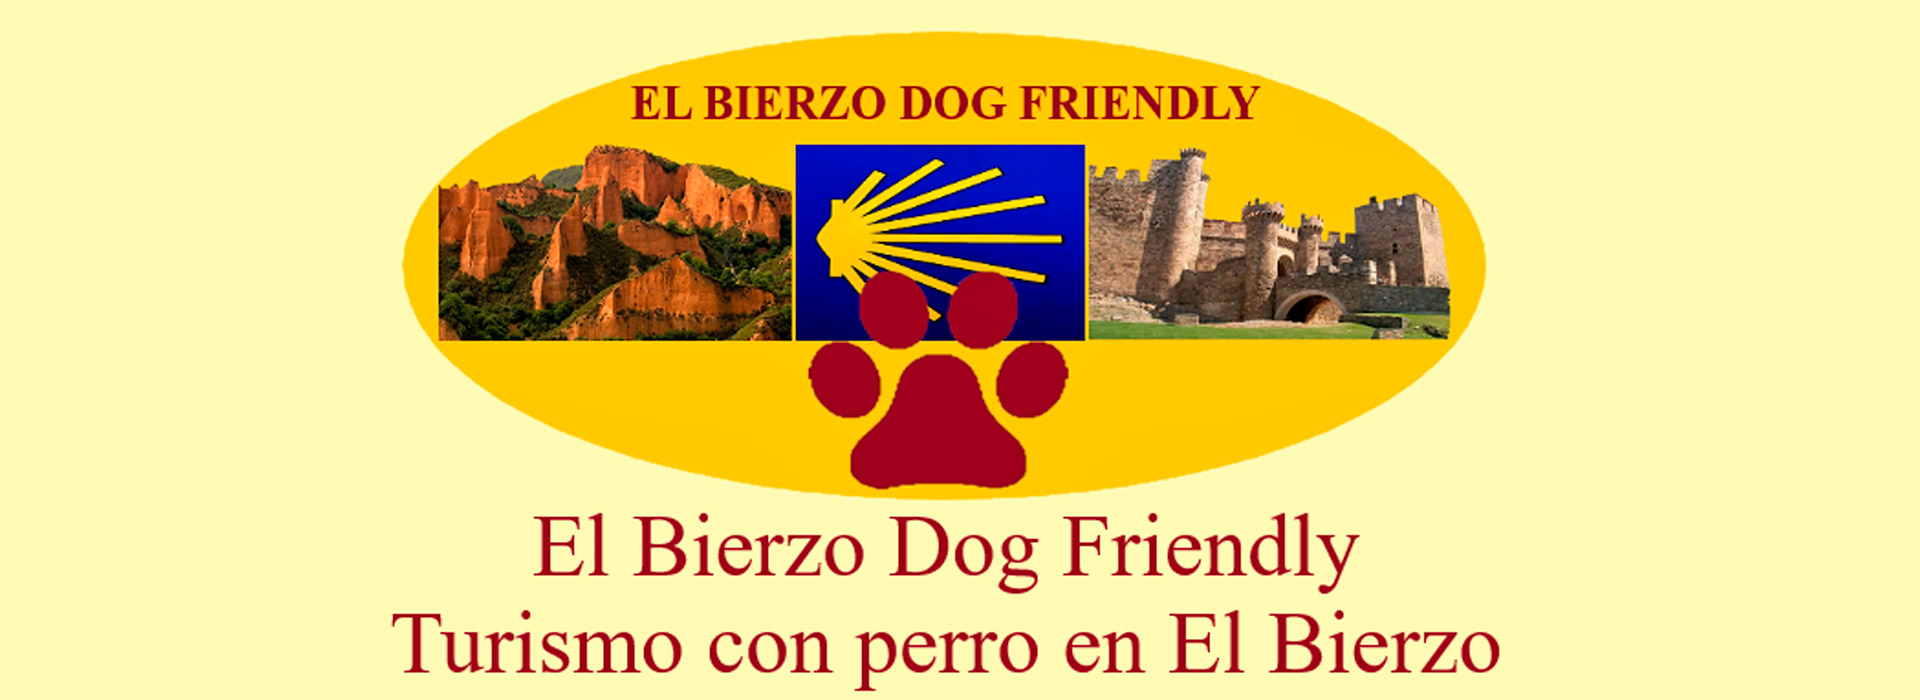 turismo con perro en El Bierzo